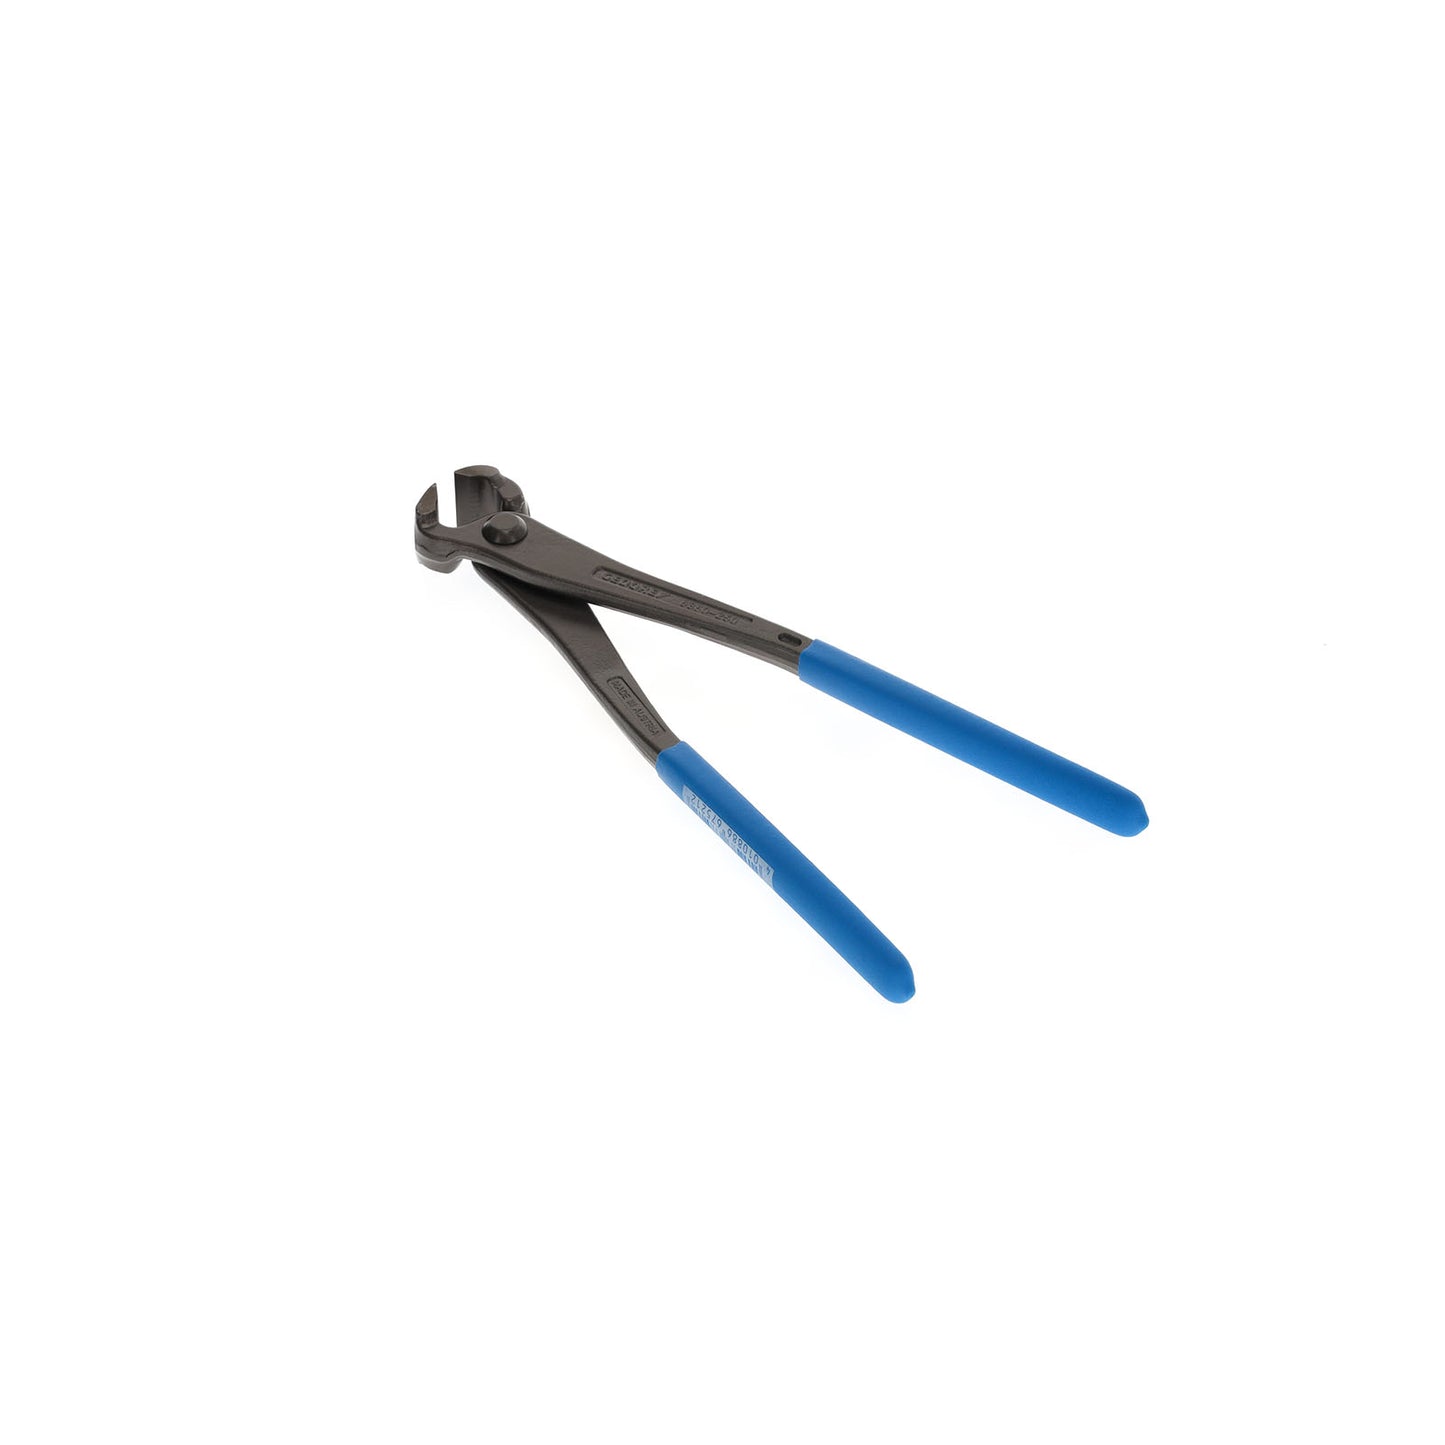 GEDORE 8380-250 TL - Ferralist's pliers 250 mm (6752100)